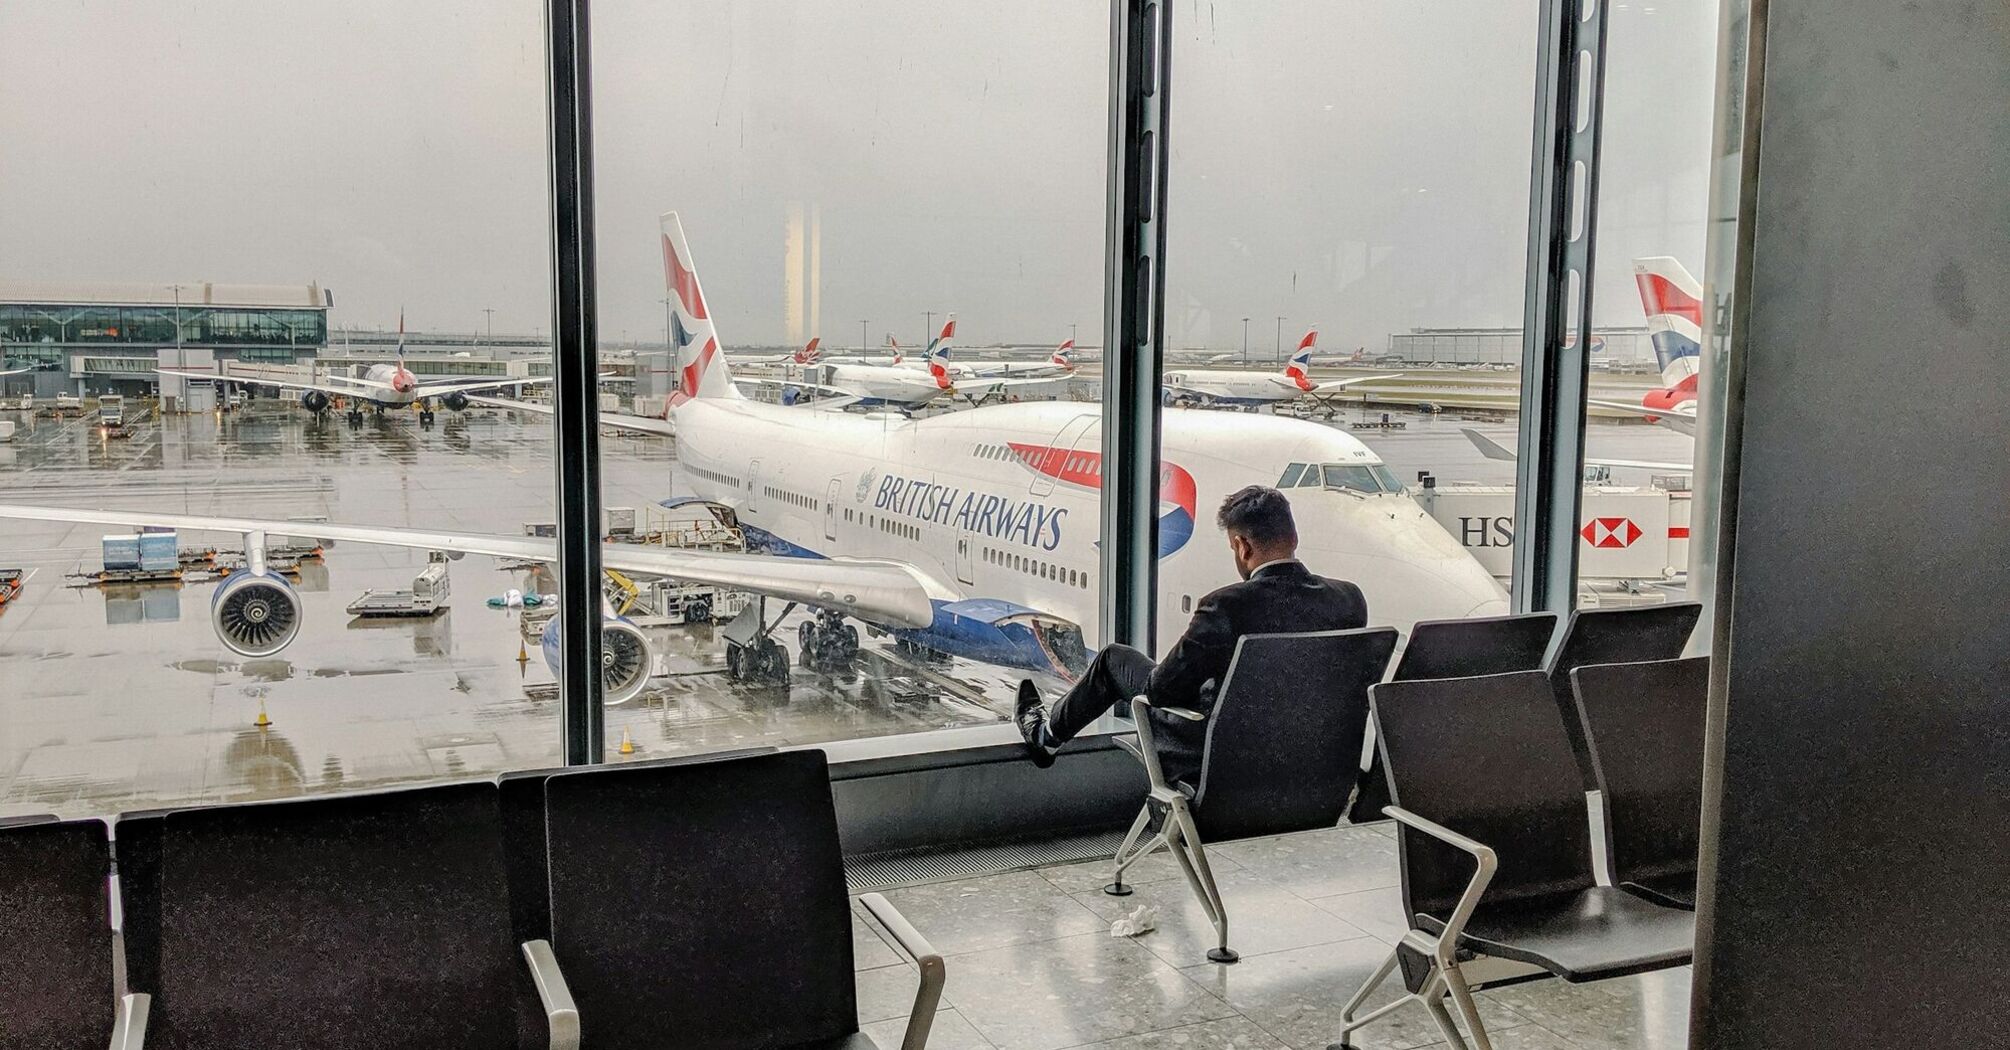 Heathrow Airport with British Airways planes